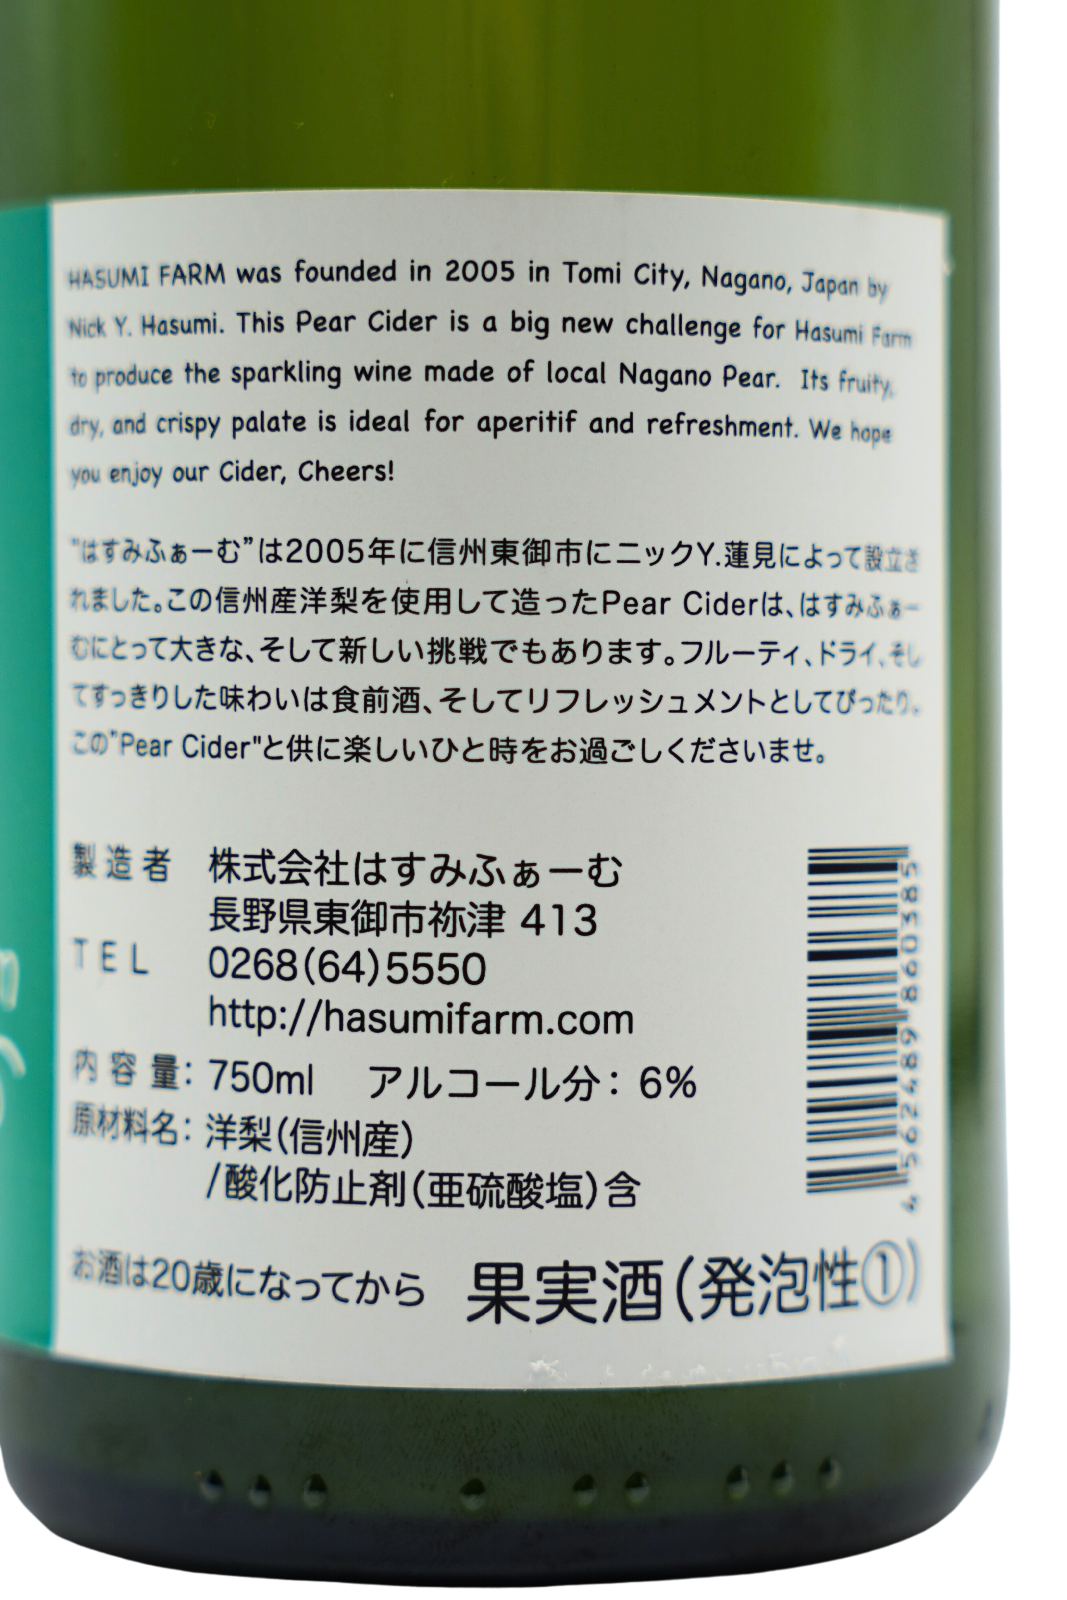 Pear Cider/ペアサイダー